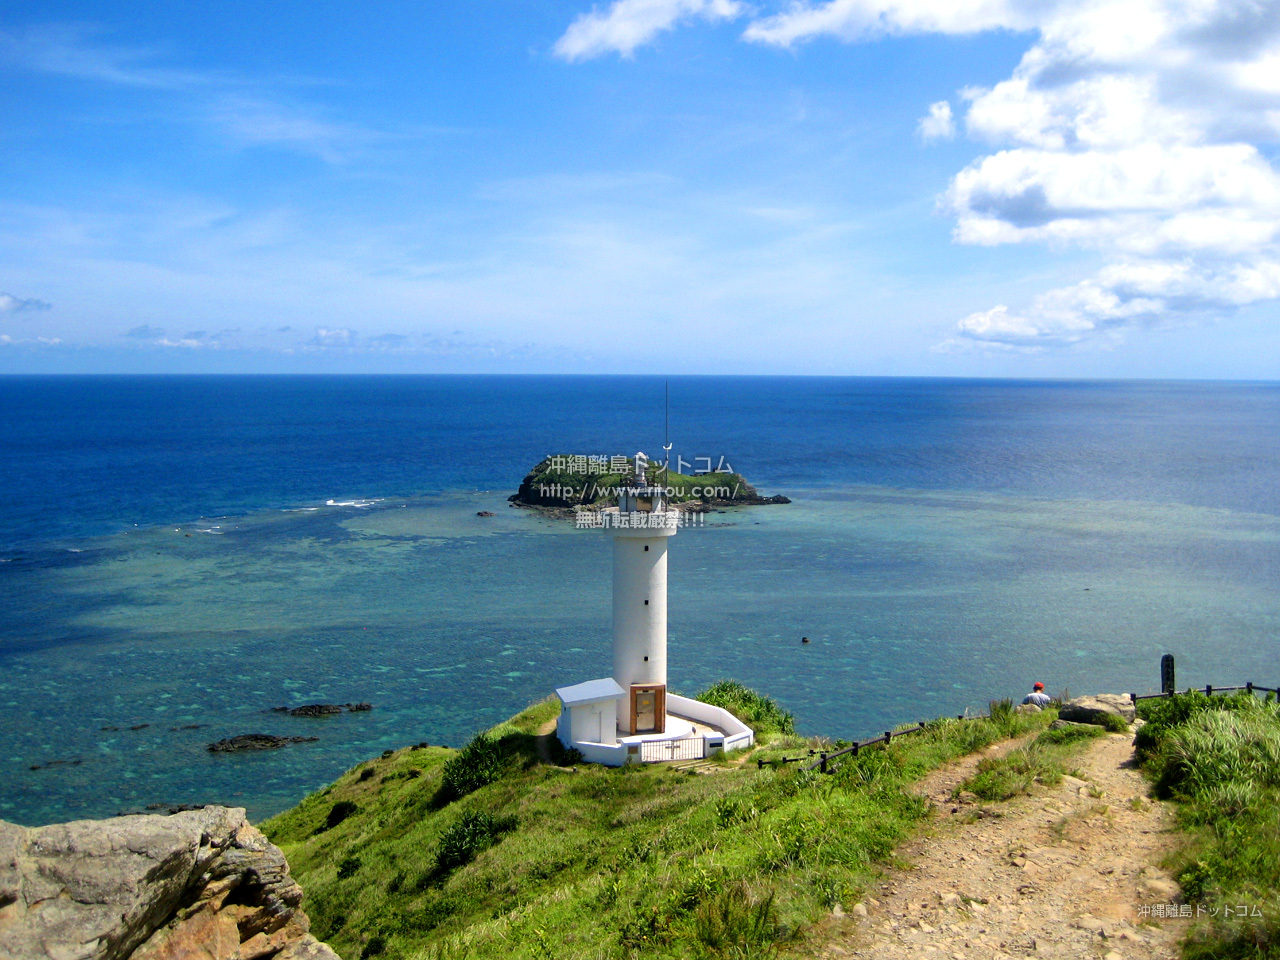 絵になる沖縄の灯台ベスト5!見て登って眺めて楽しめる離島の灯台へ行こう!!（沖縄の旅行記⁄旅行ガイド）